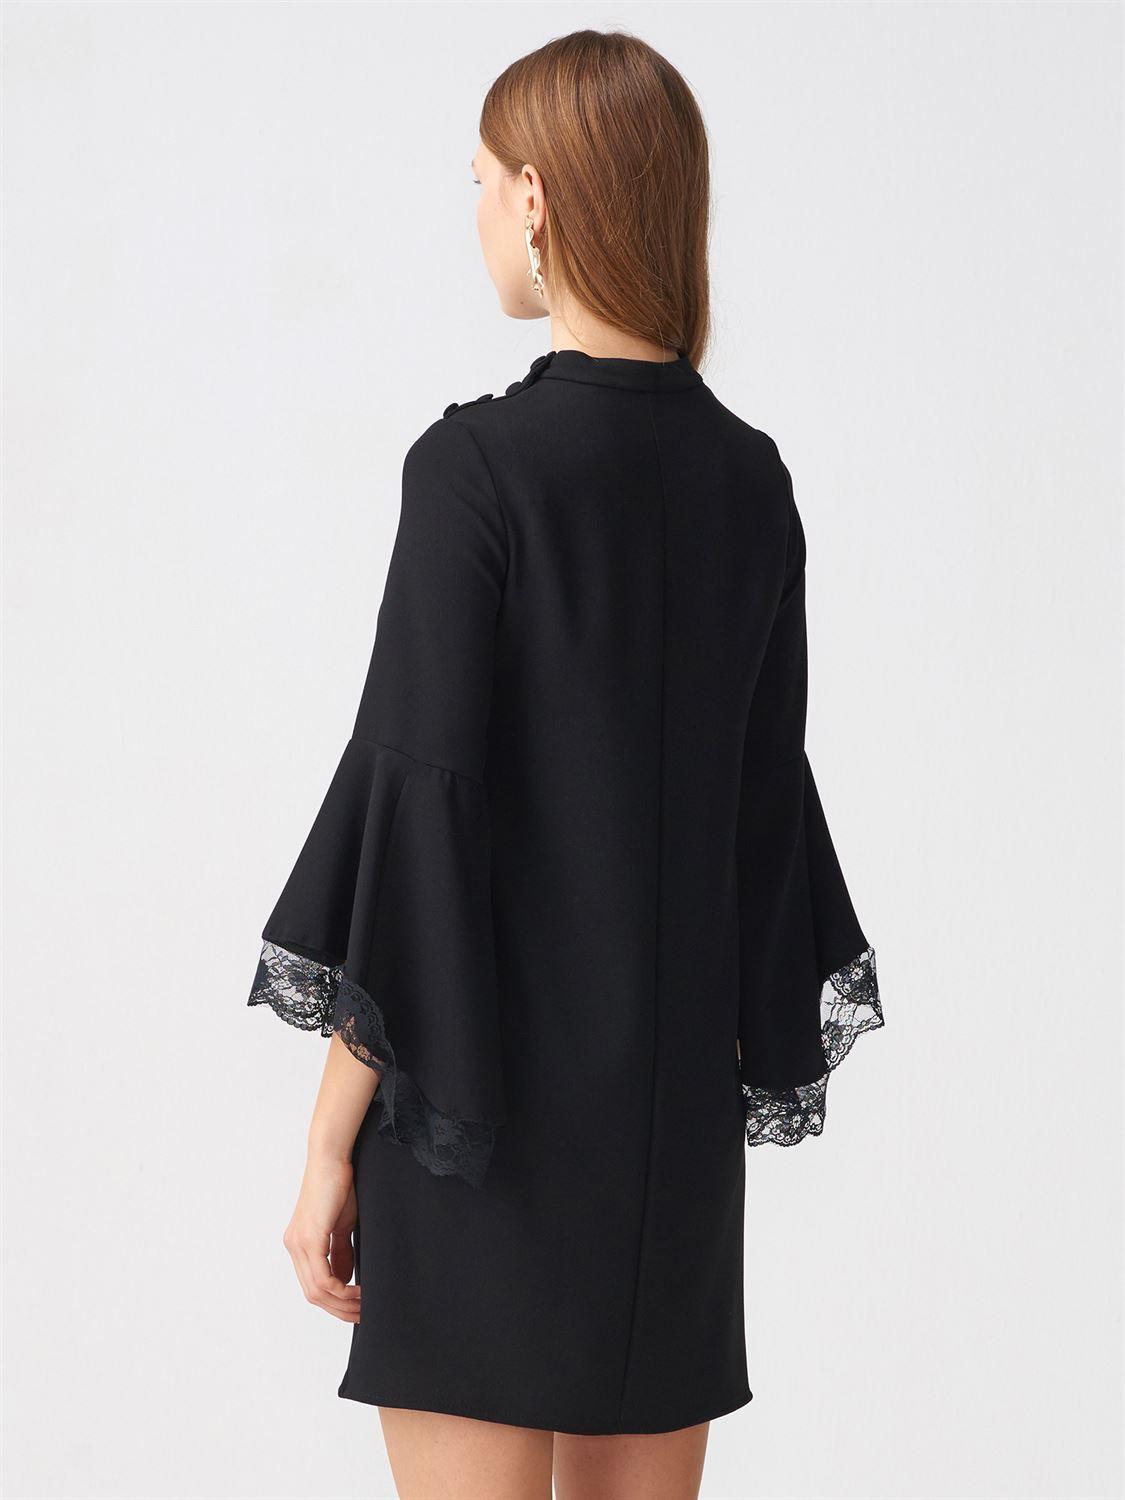 9830 Dantel Detaylı İspanyol Kol Elbise-Siyah